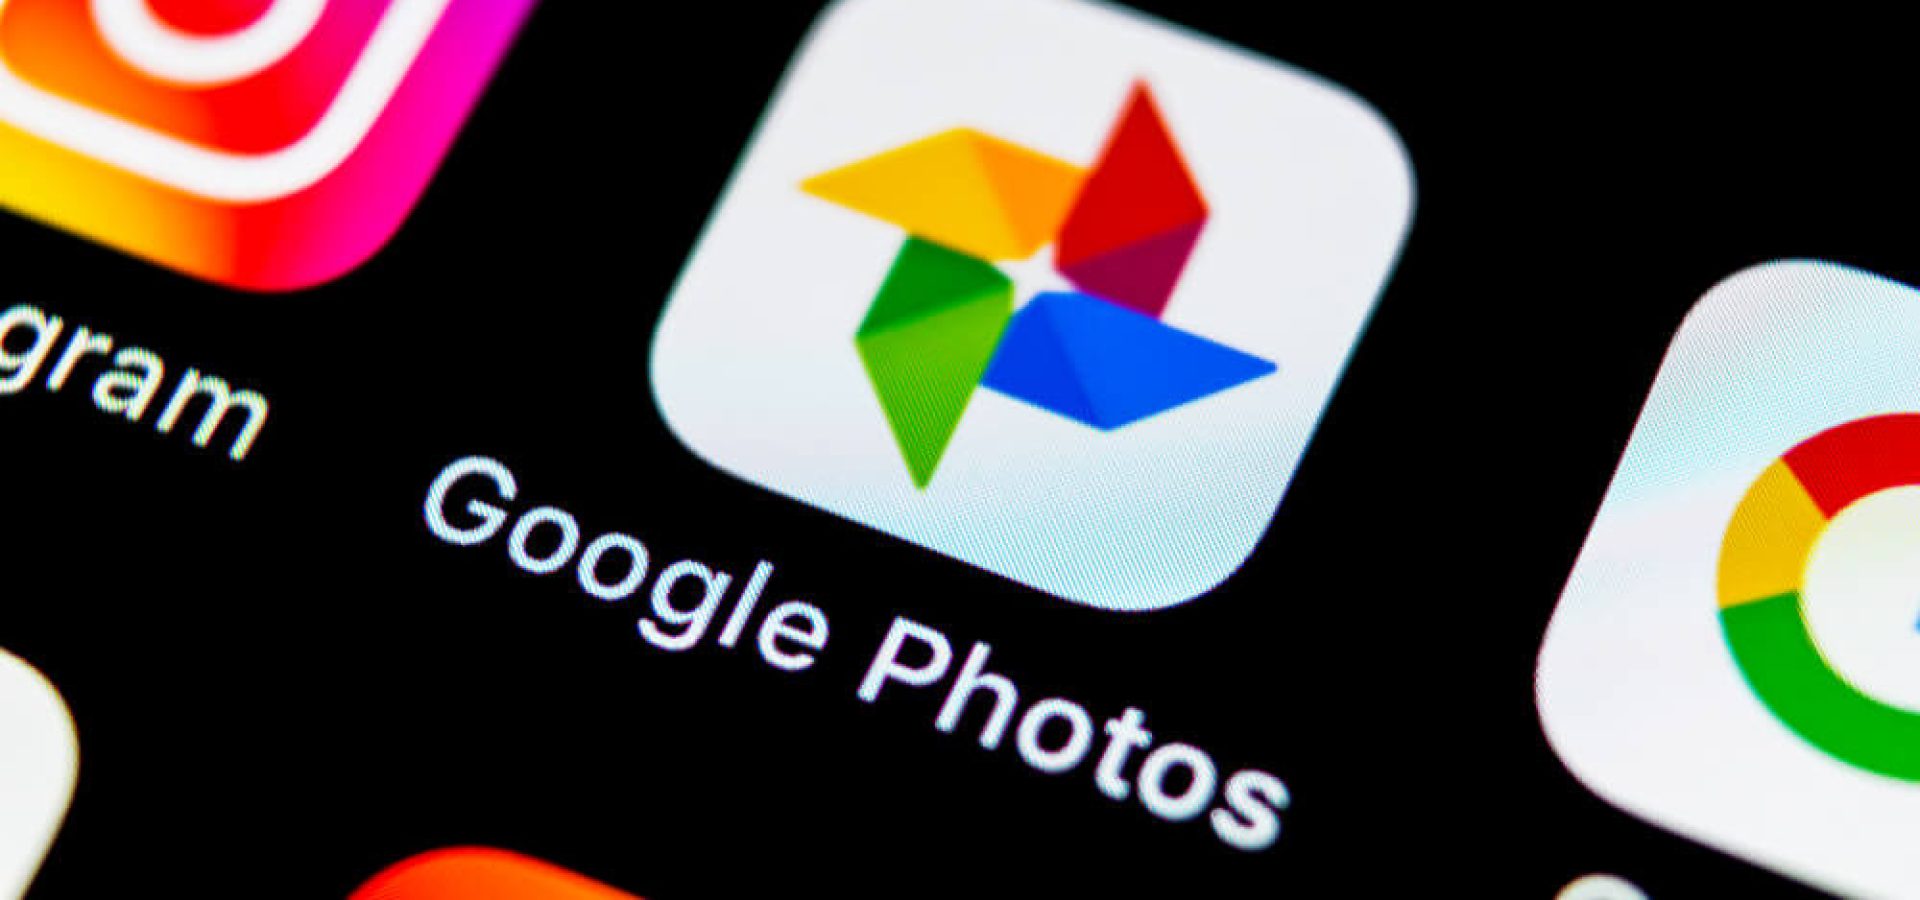 Google Photos plus application icon.